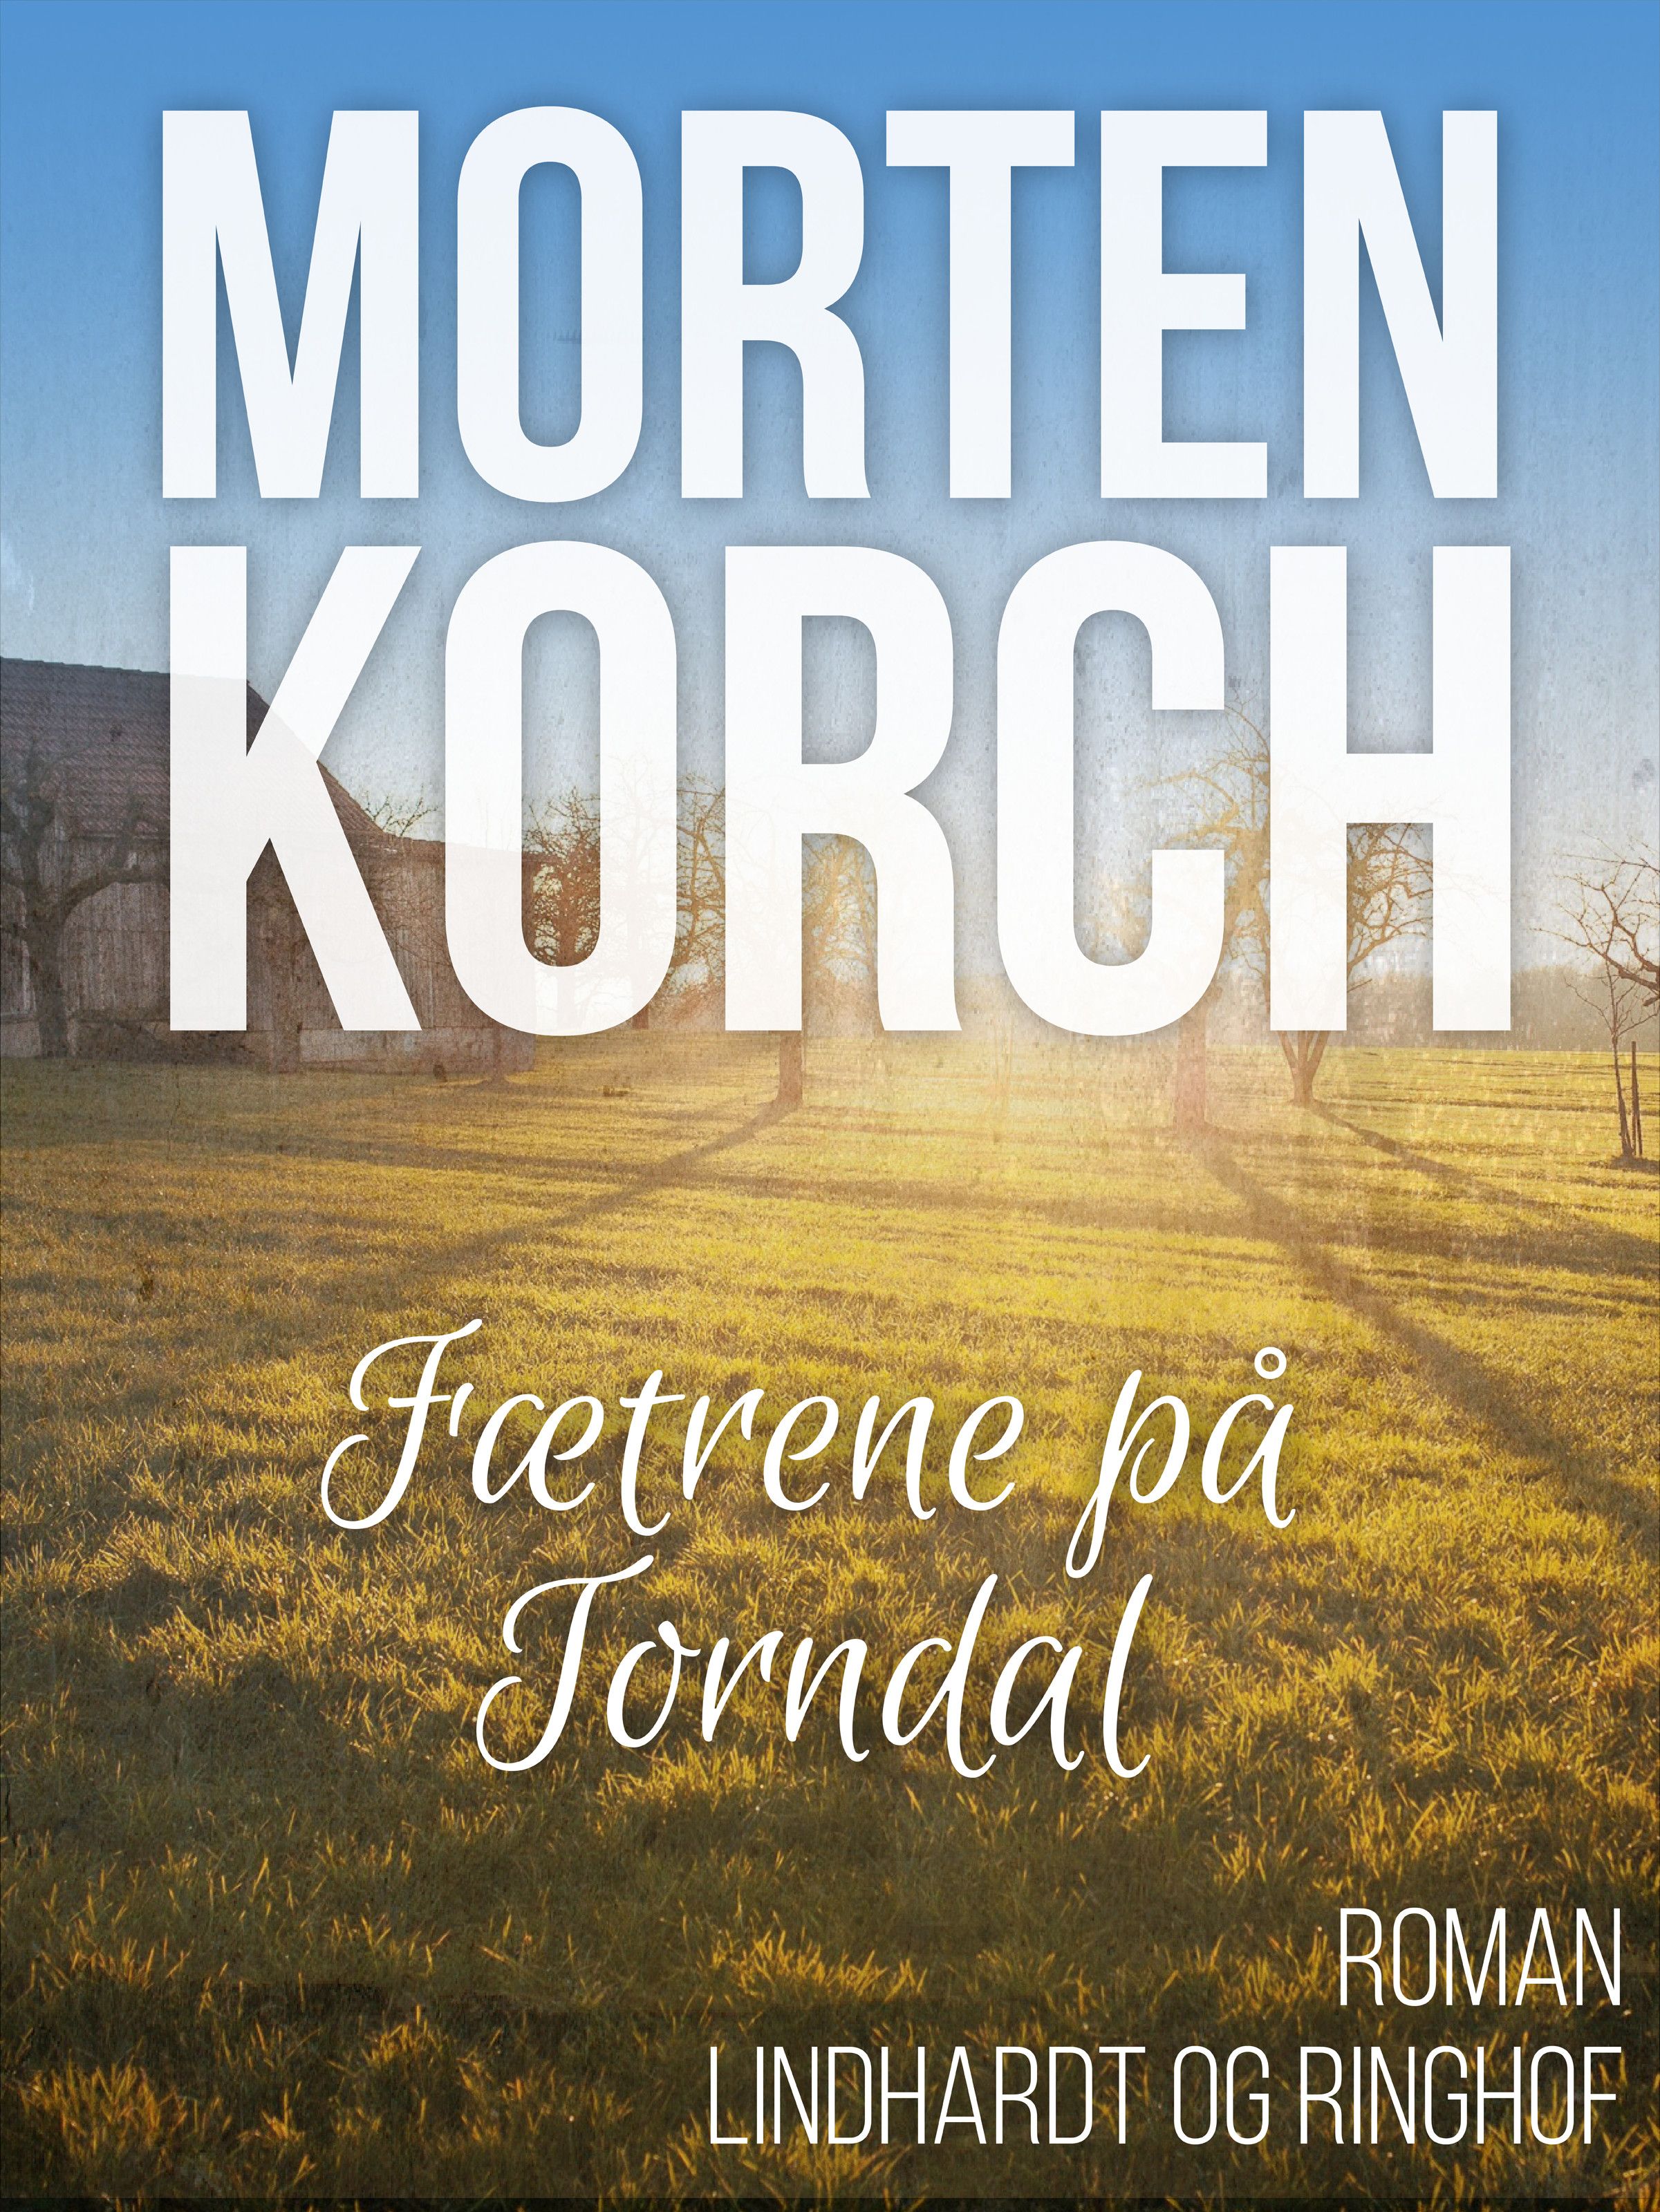 Fætrene på Torndal, ljudbok av Morten Korch